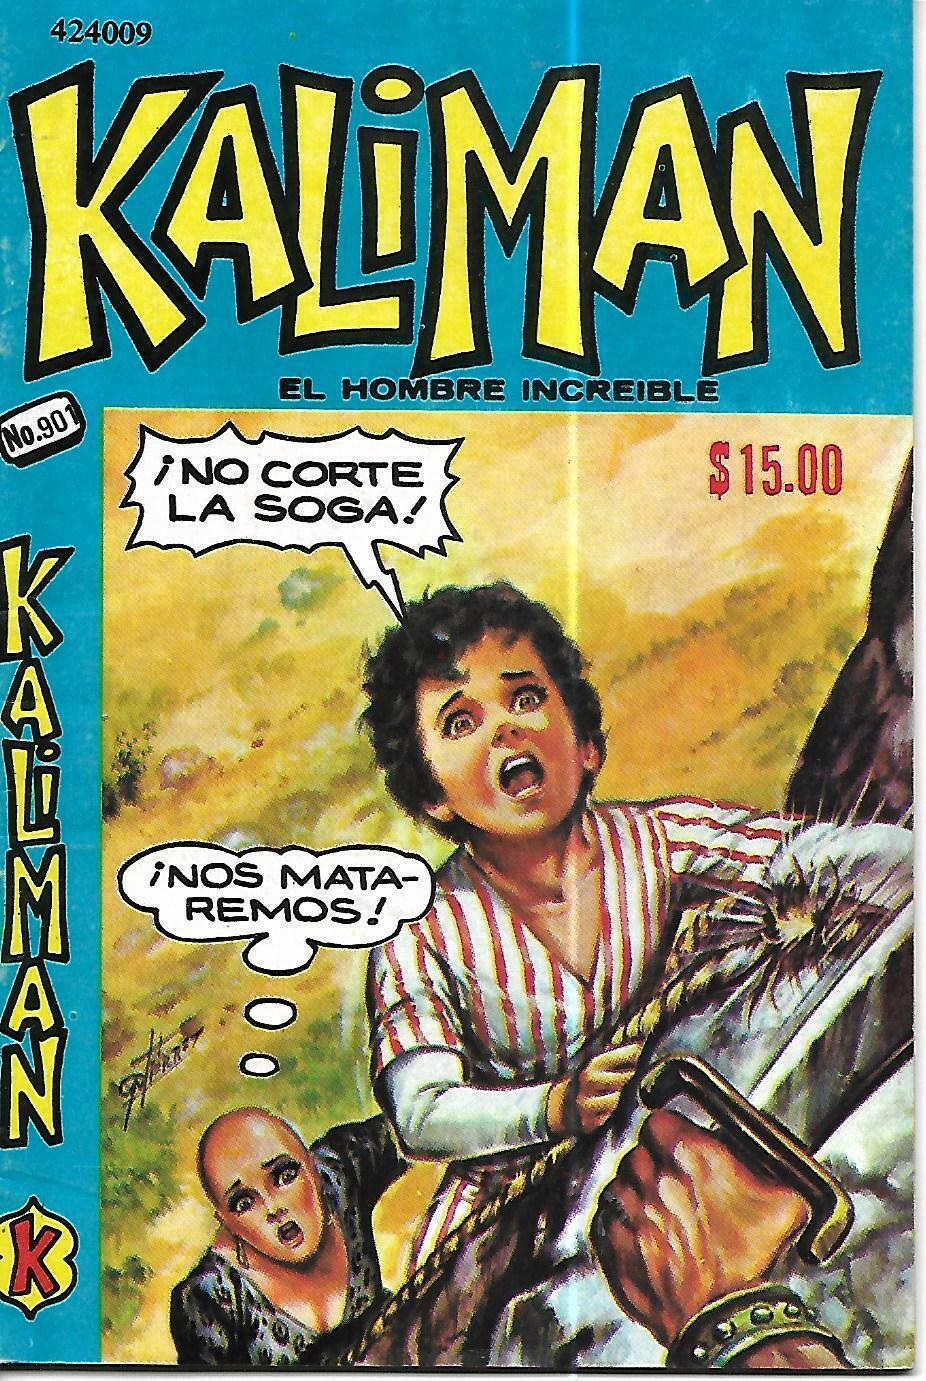 Kaliman El Hombre Increible #901 - Marzo 4, 1983 - Mexico 